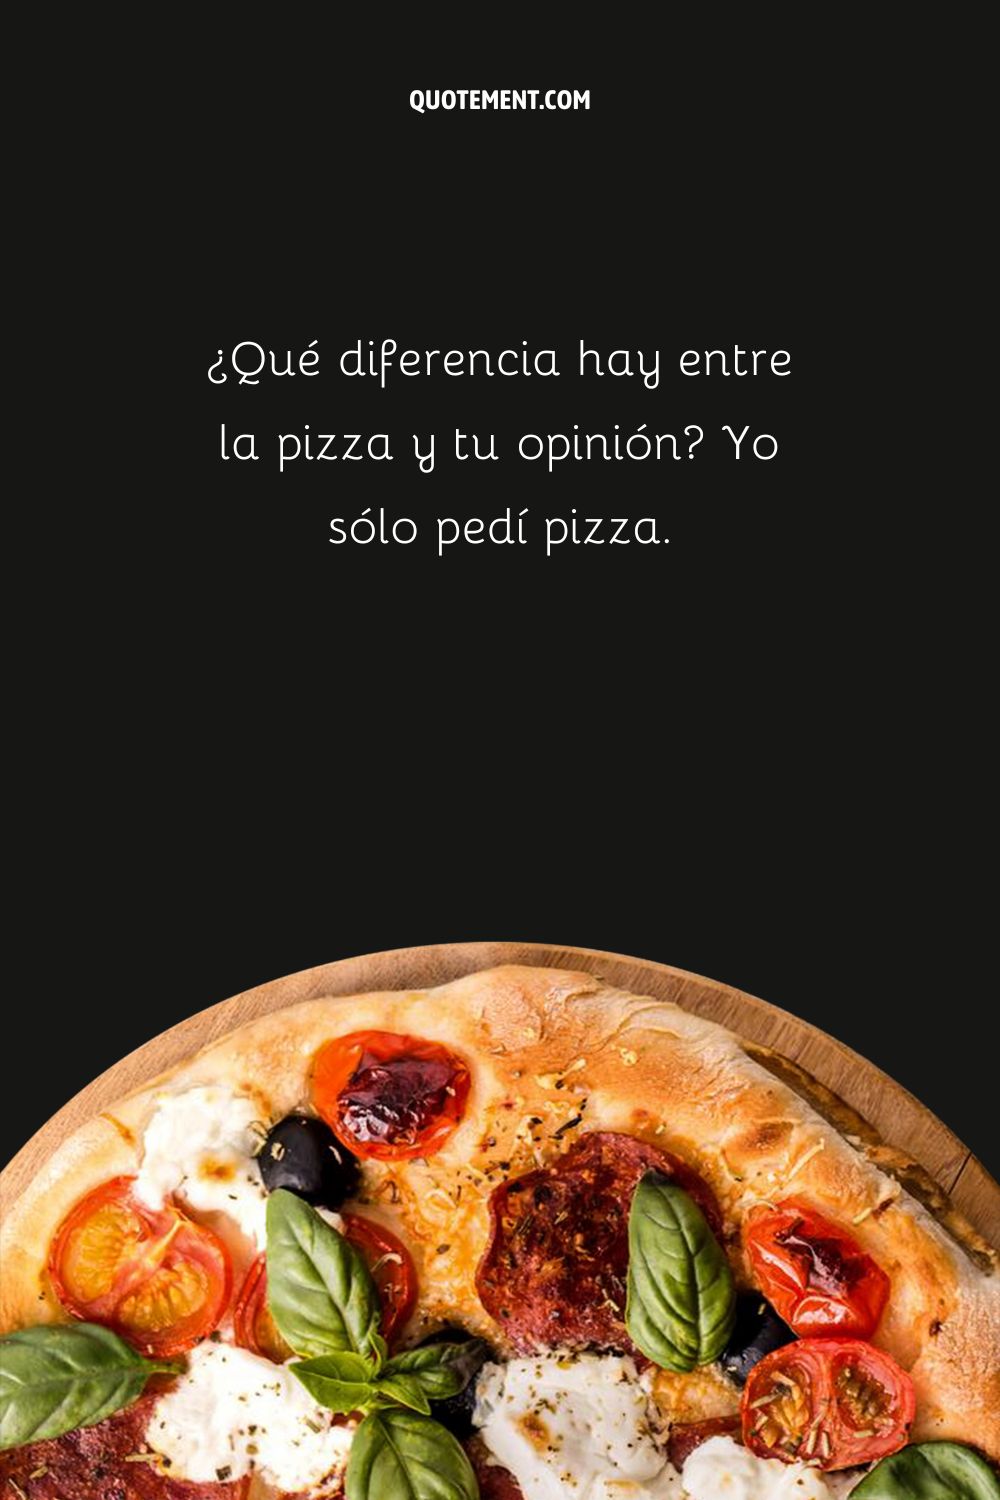 ¿Cuál es la diferencia entre la pizza y tu opinión